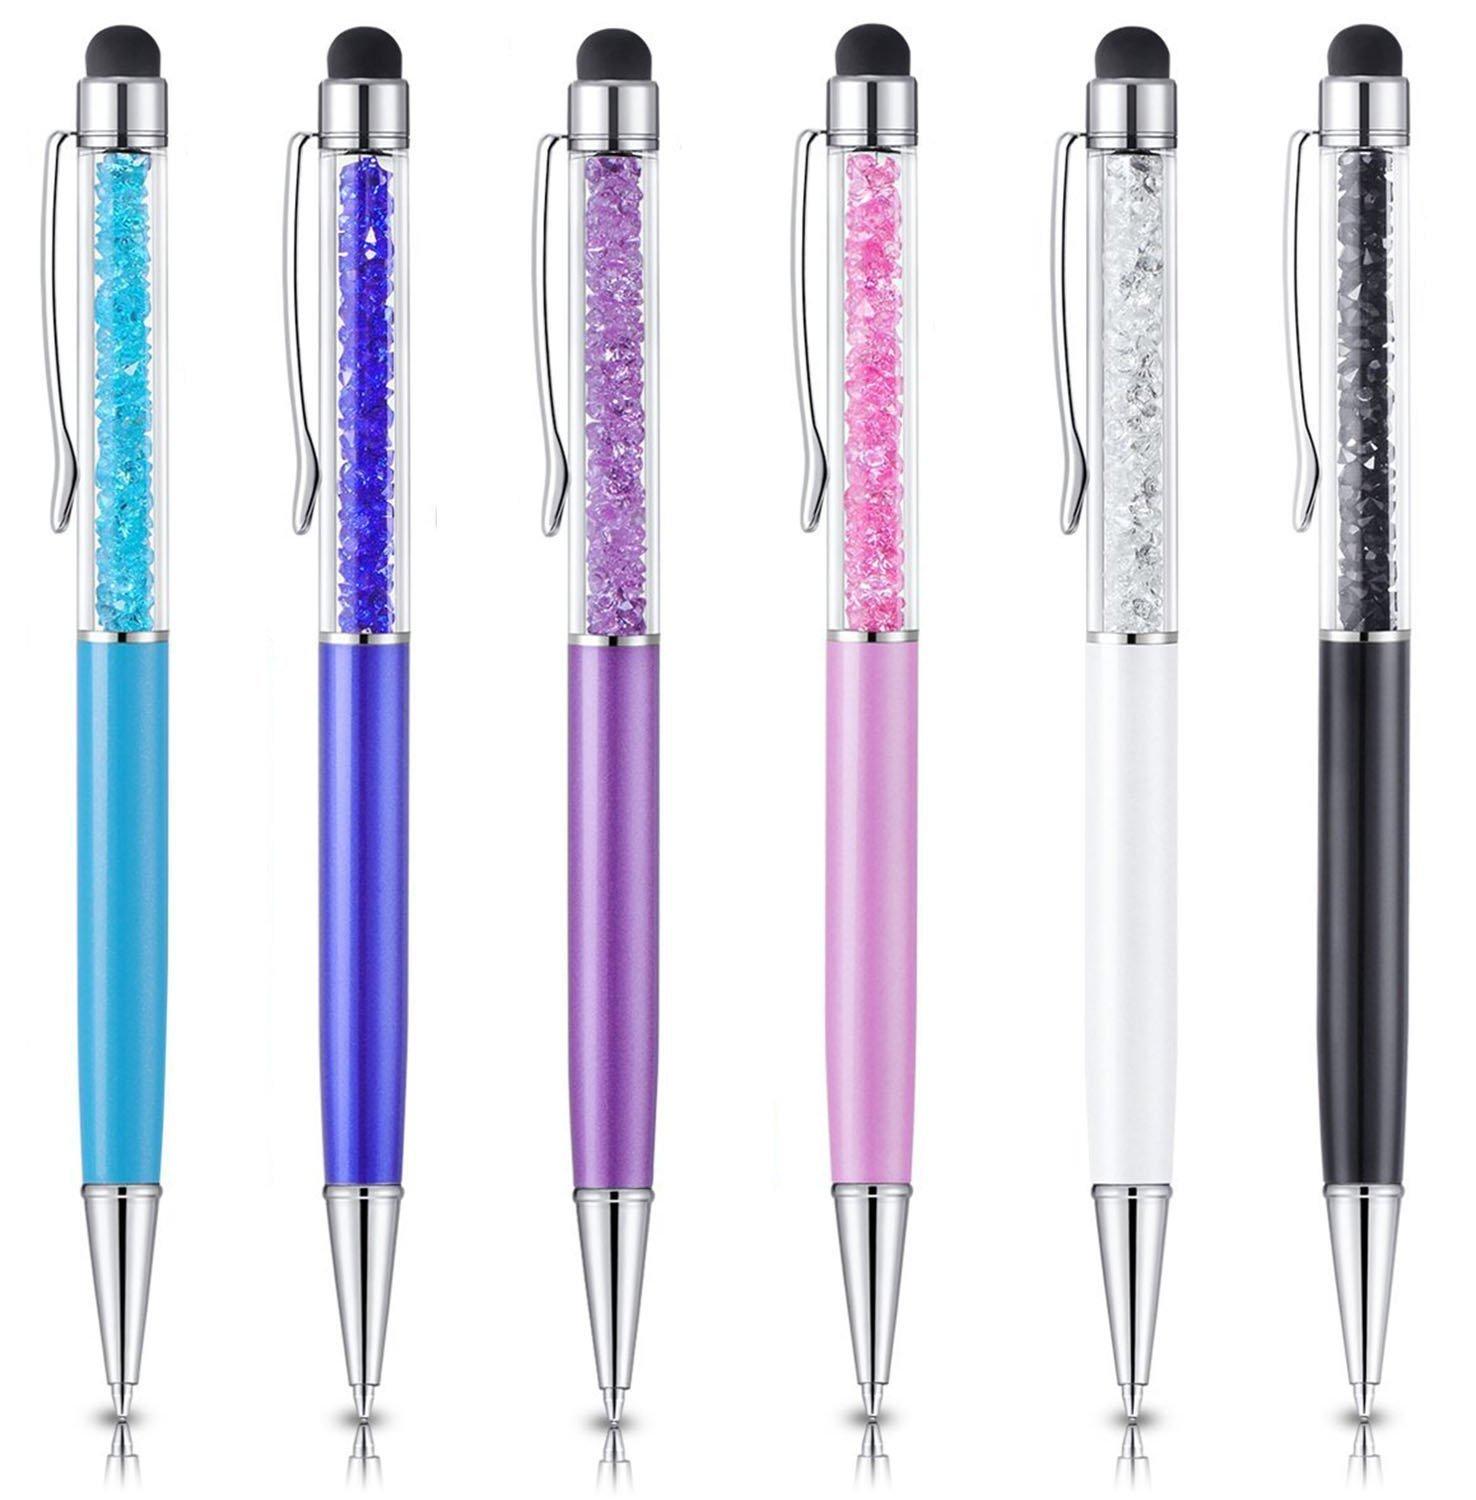 Crystal 2 in 1 Touch Pen Inkt Balpen Voor Alle Capacitieve Touchscreen Apparaat Kleurrijke Stylus Pen Voor Iphone IOS Android